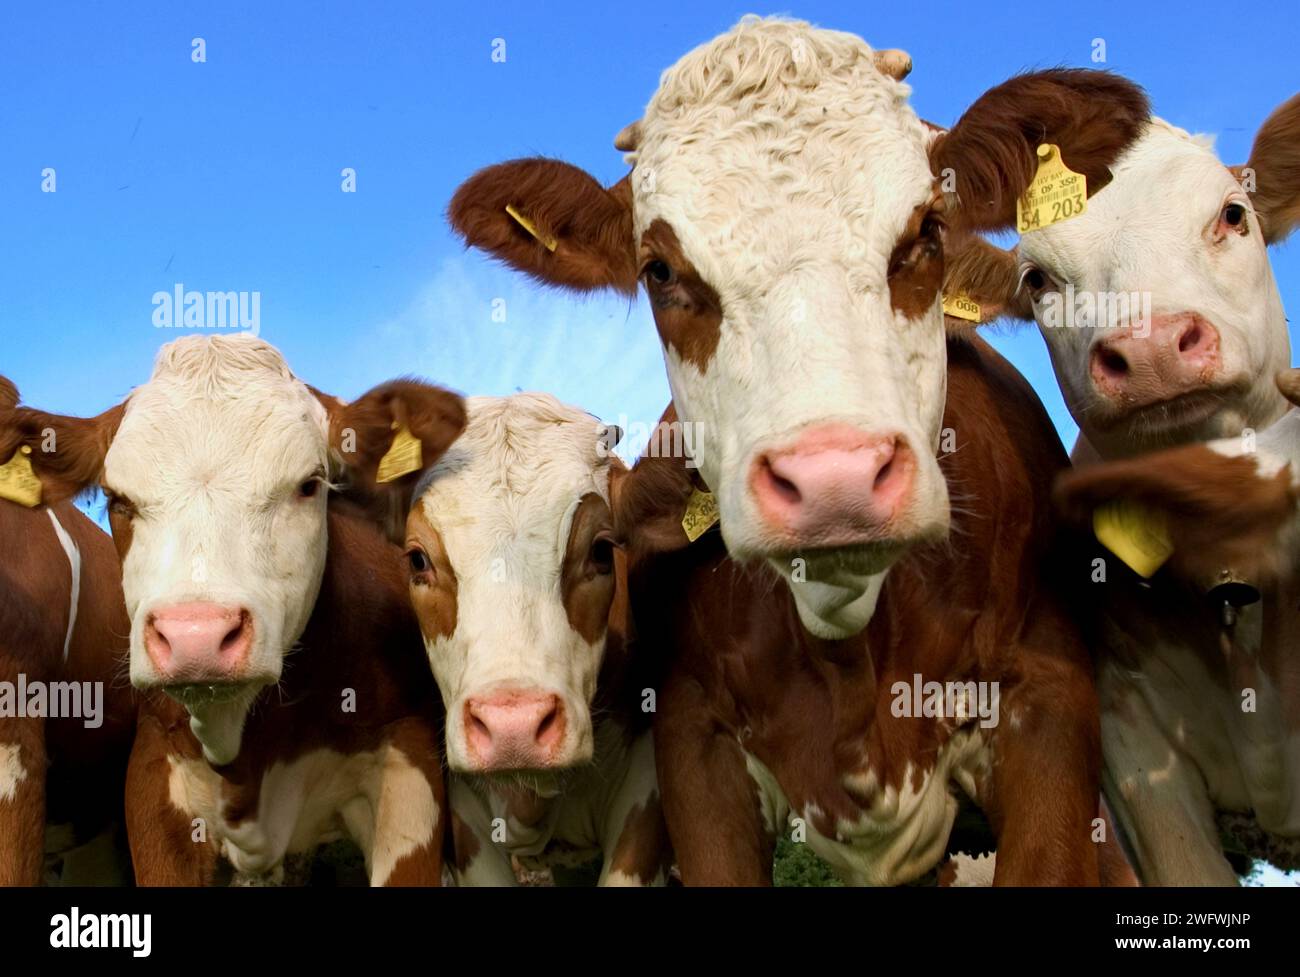 Neugierige Kühe interessieren sich für den Fotografen Stockfoto